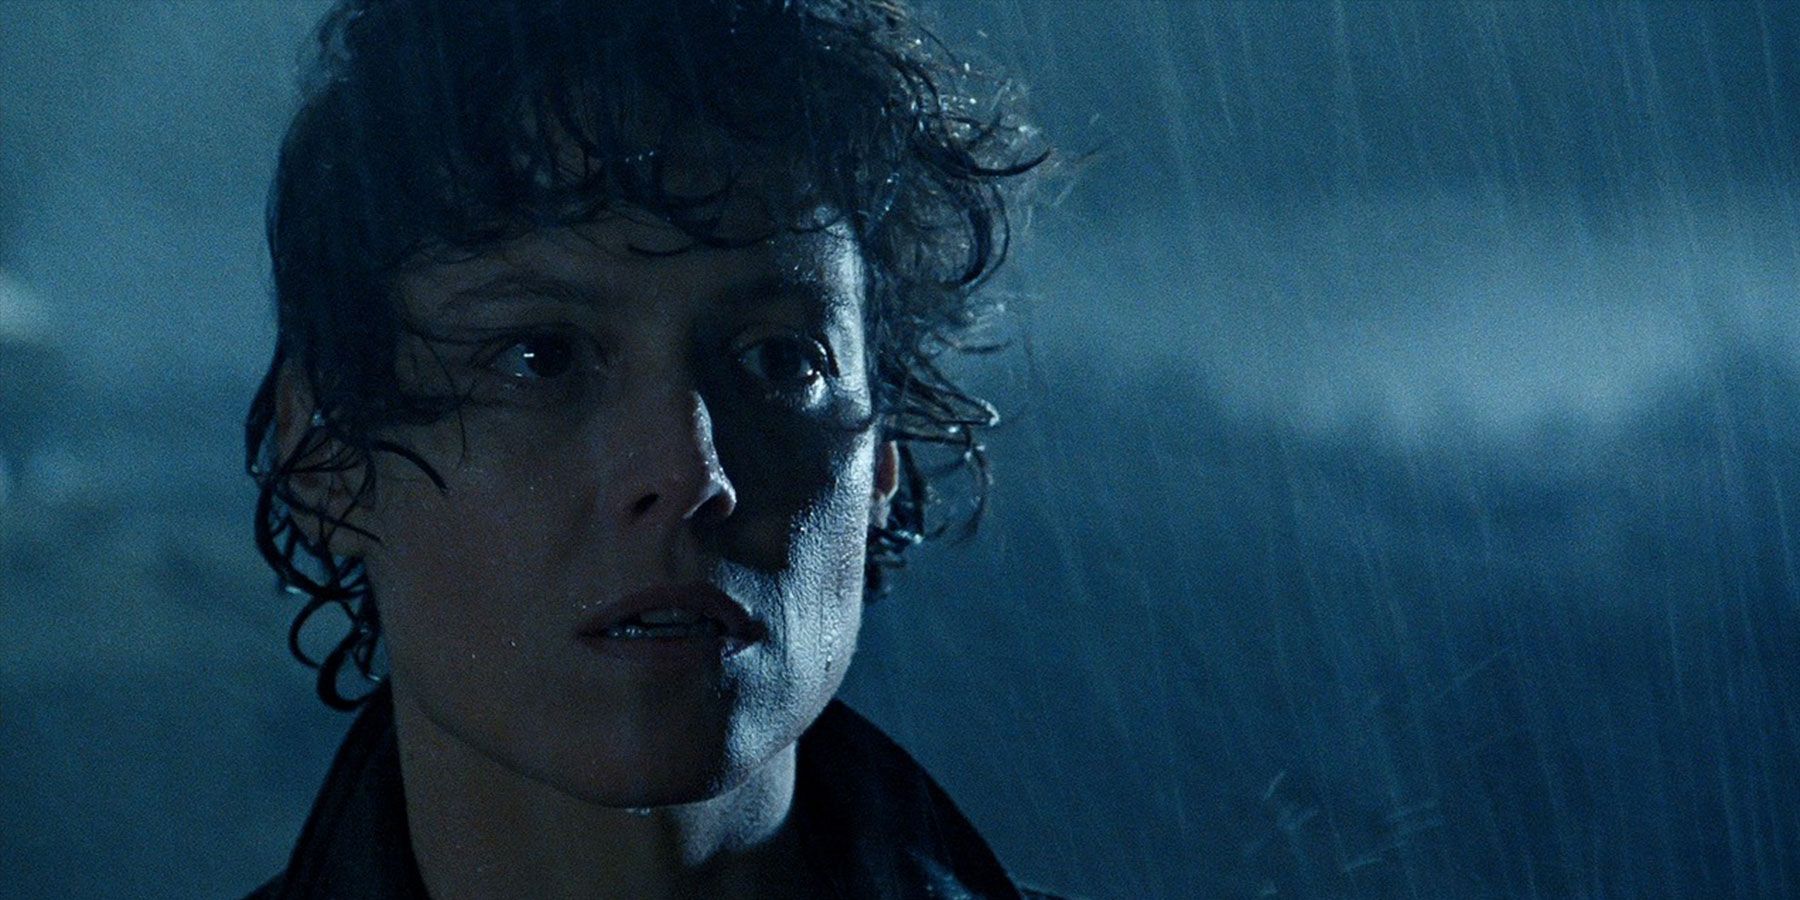 Ellen Ripley standing in the rain